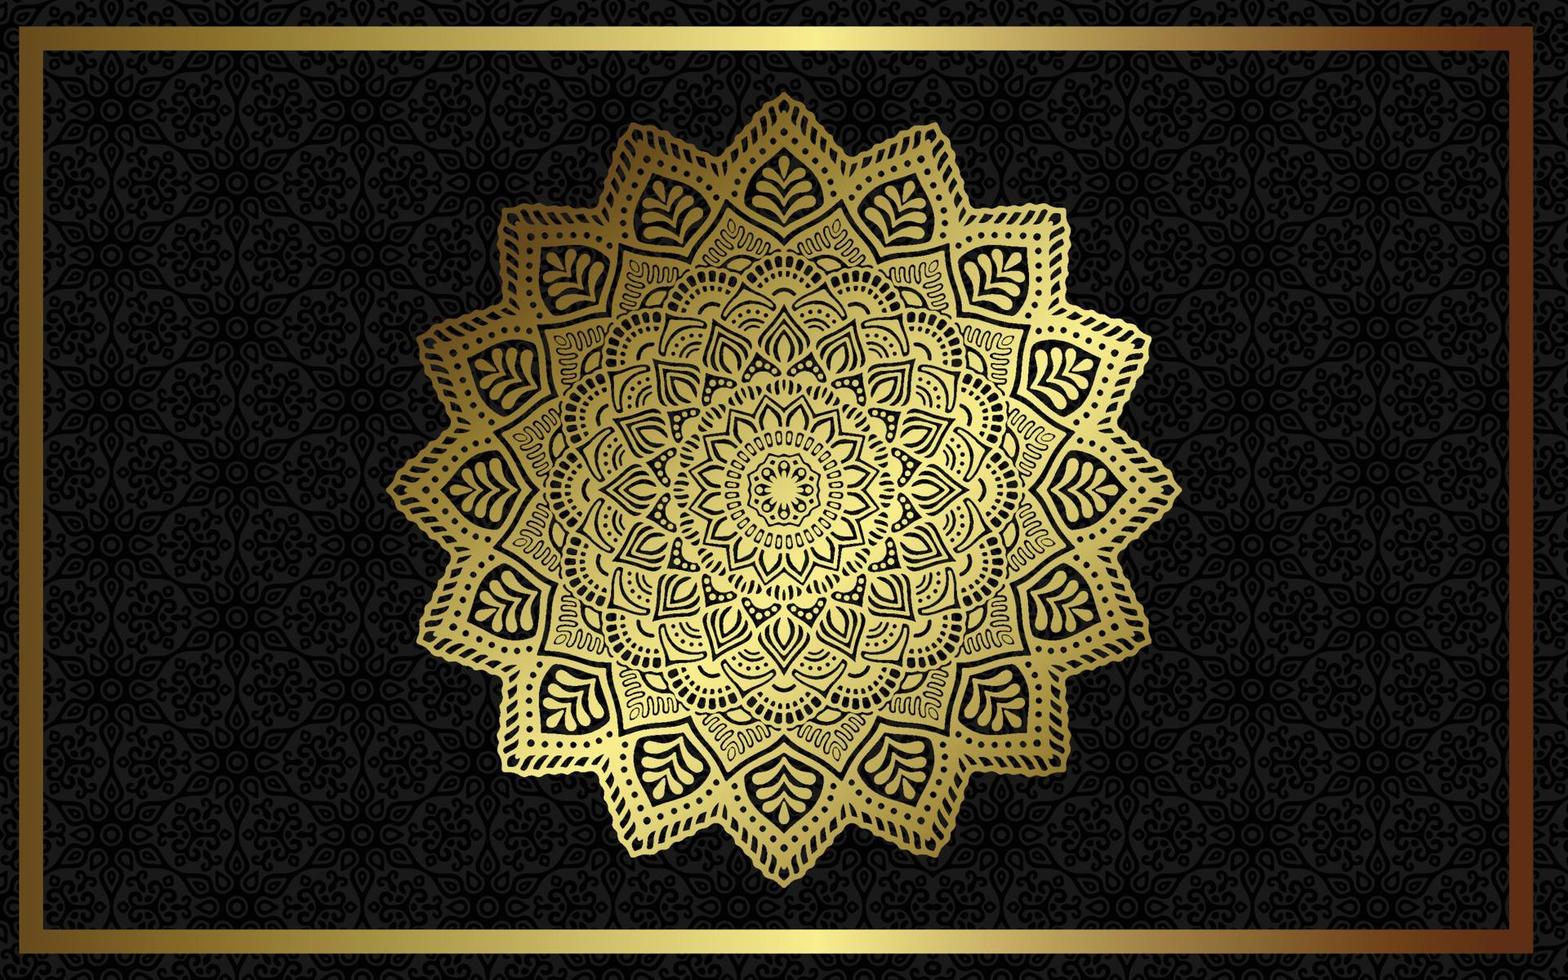 lyx mandala bakgrund med gyllene arabesk mönster arabisk islamisk öst stil. dekorativ mandala i ramadanstil. mandala för tryck, affisch, omslag, broschyr, flygblad, banderoll vektor